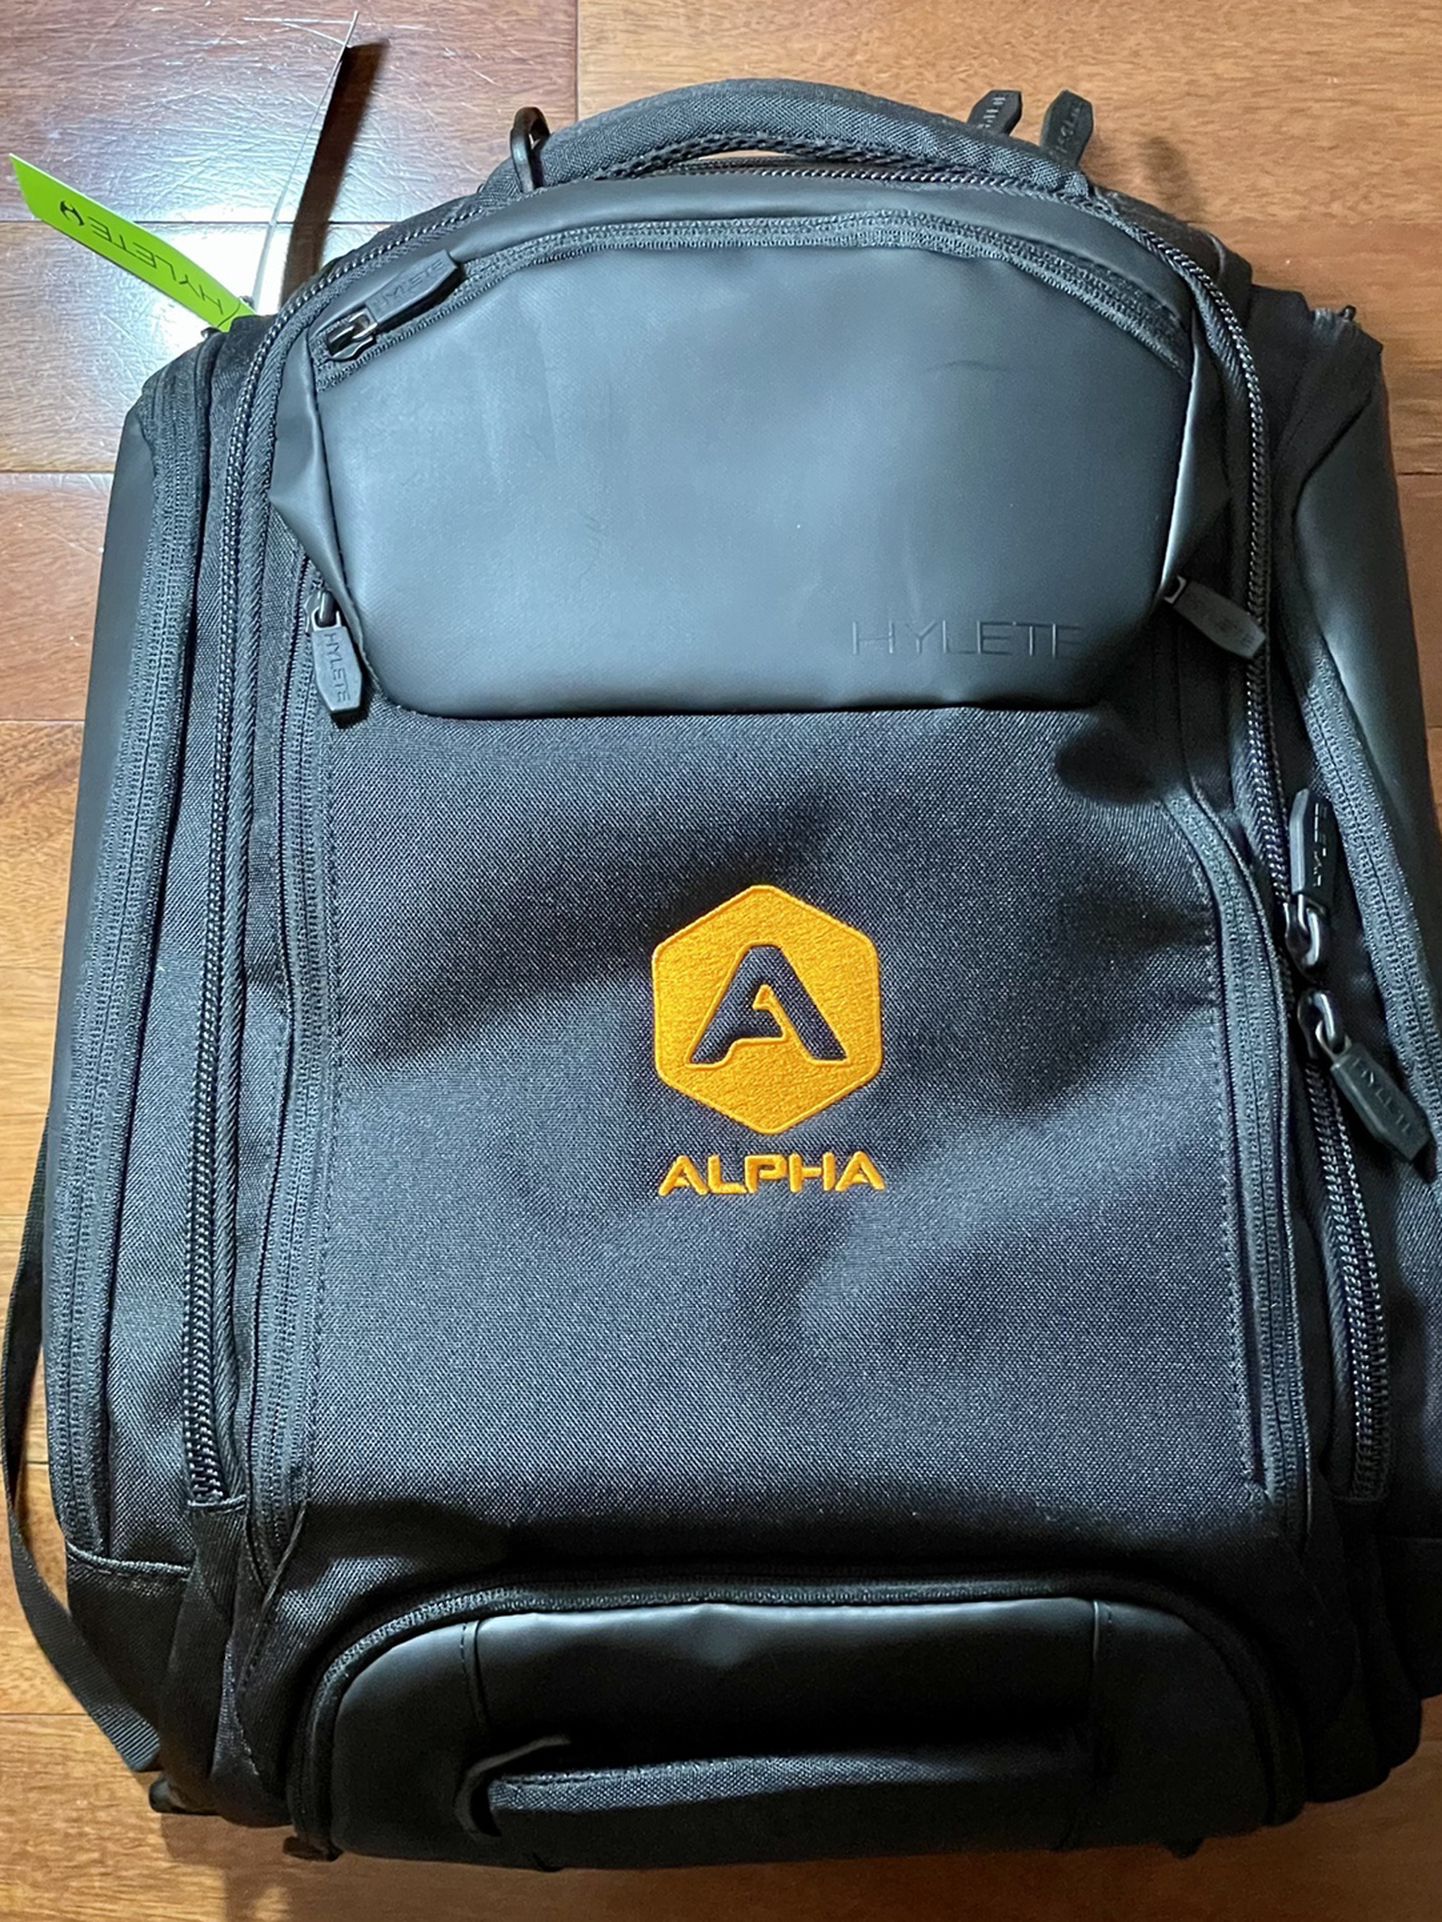 Alpha Athlete Backpack